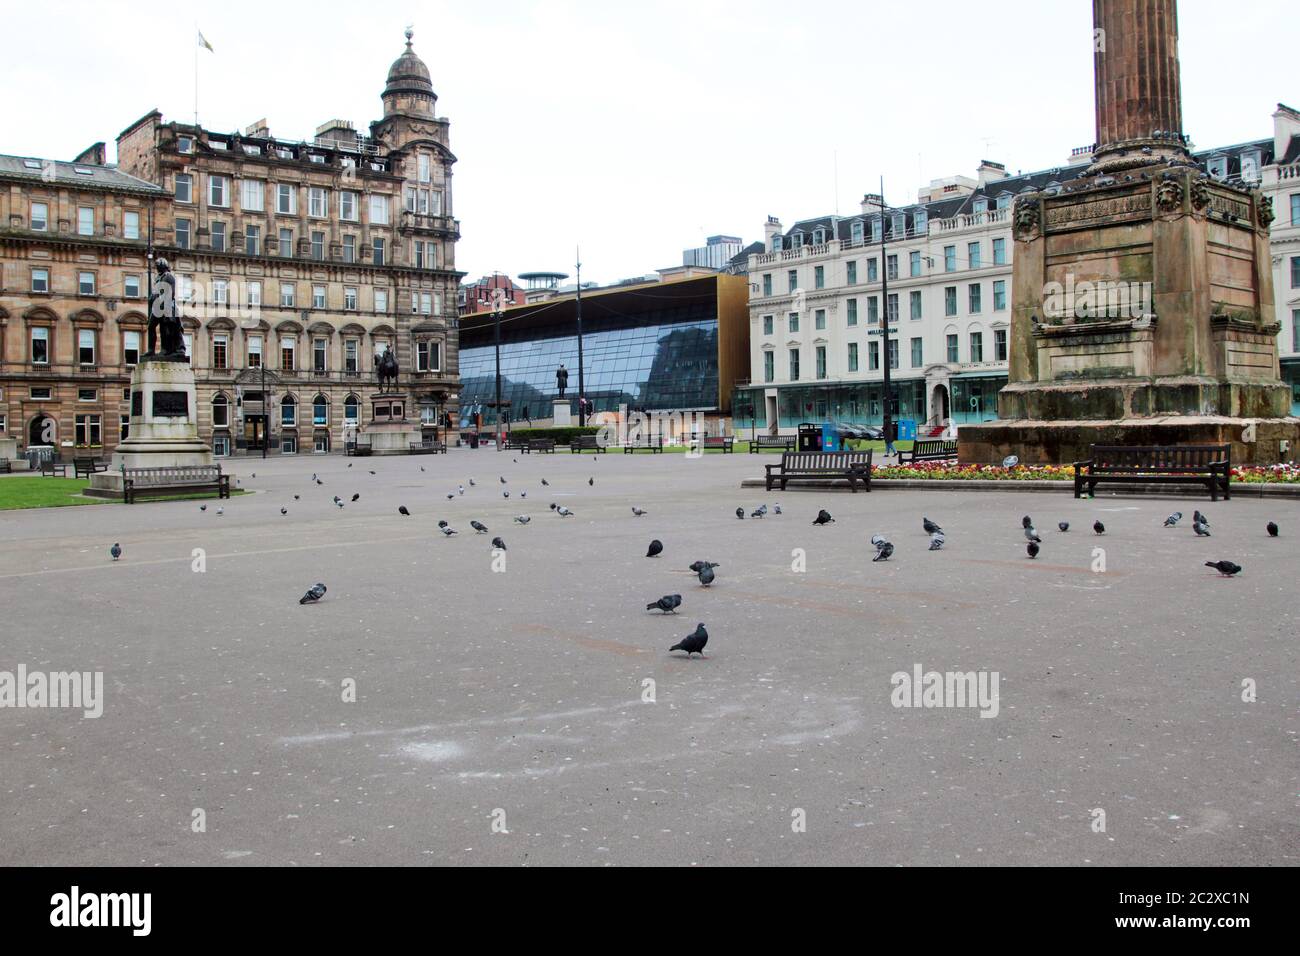 Dans le centre de Glasgow se trouve George Square, où des centaines, ou des milliers de personnes passent par elle chaque jour avec les touristes et les visiteurs. Mais, maintenant, il est déserté et vide en raison de la pandémie Covid-19 qui a fait un grand pas dans le pays et a causé un verrouillage et rester à la maison jusqu'à ce qu'il soit terminé. Mai 2020. ALAN WYLIE/ALAY © Banque D'Images